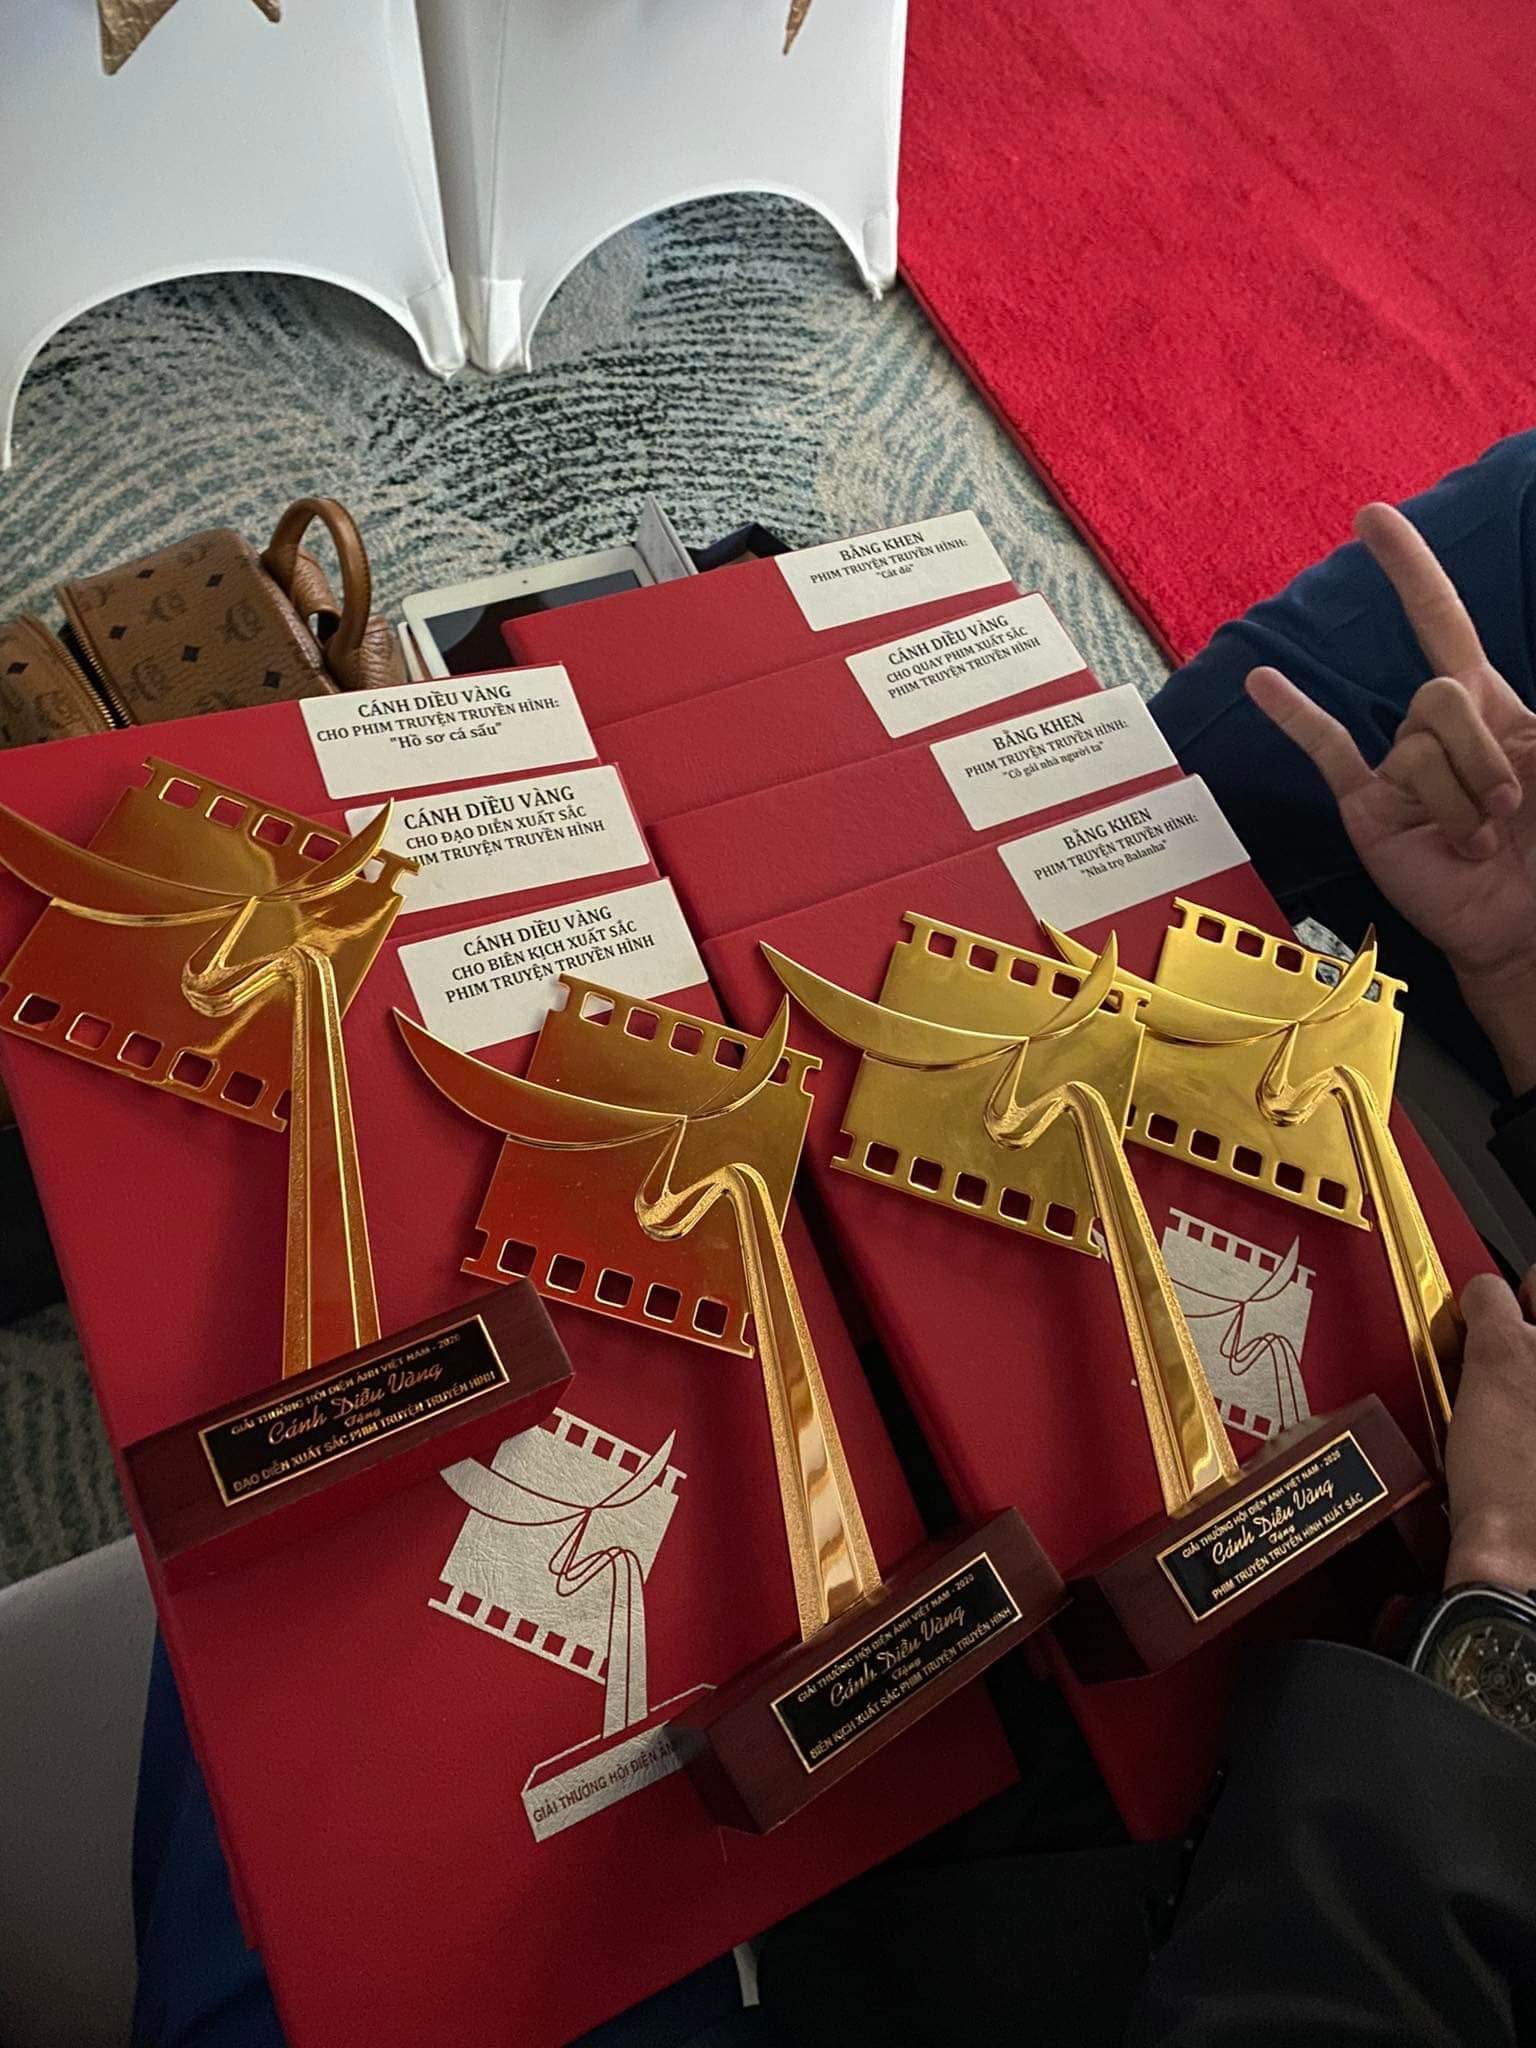 Mạnh Trường, Lương Thu Trang và Bố già xuất sắc đoạt giải Cánh diều vàng - Ảnh 4.